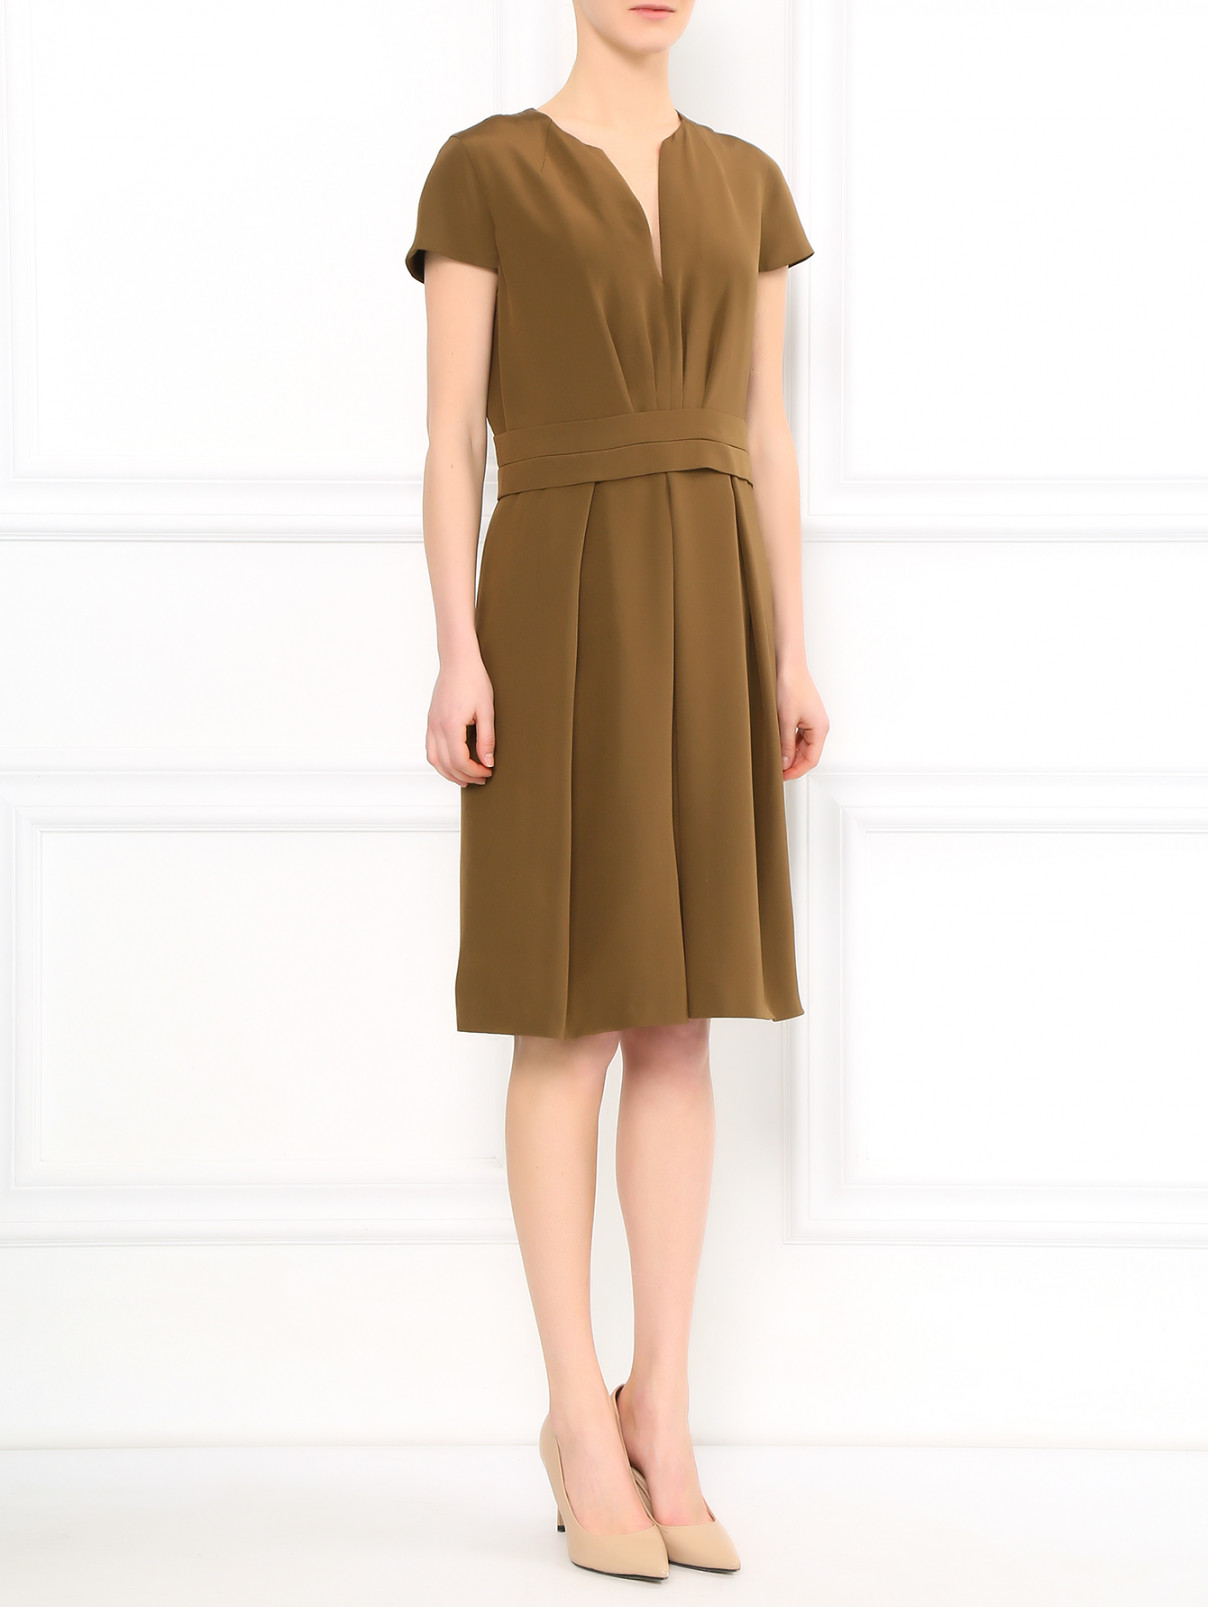 Платье из шелка Etro  –  Модель Общий вид  – Цвет:  Коричневый